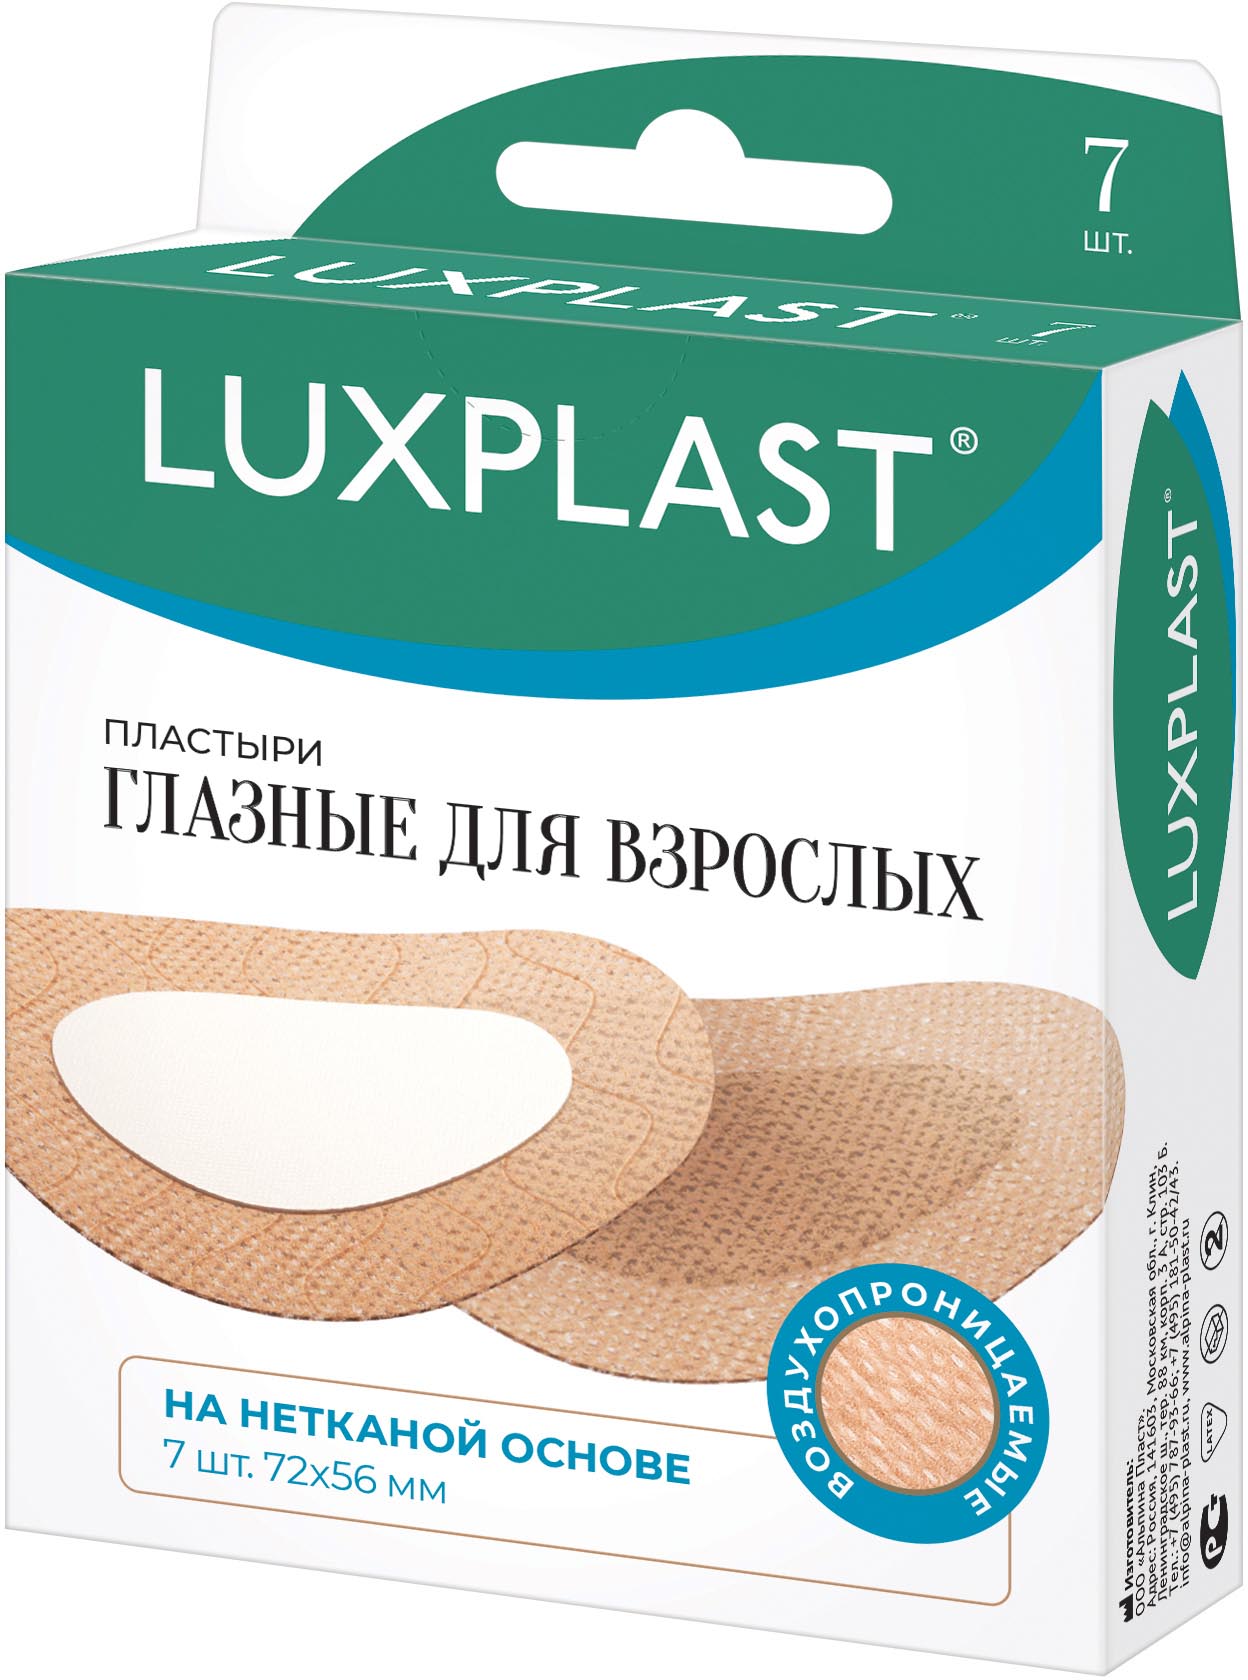 Luxplast Глазной пластырь для взрослых 56 x 72 мм, 7 шт (Lux